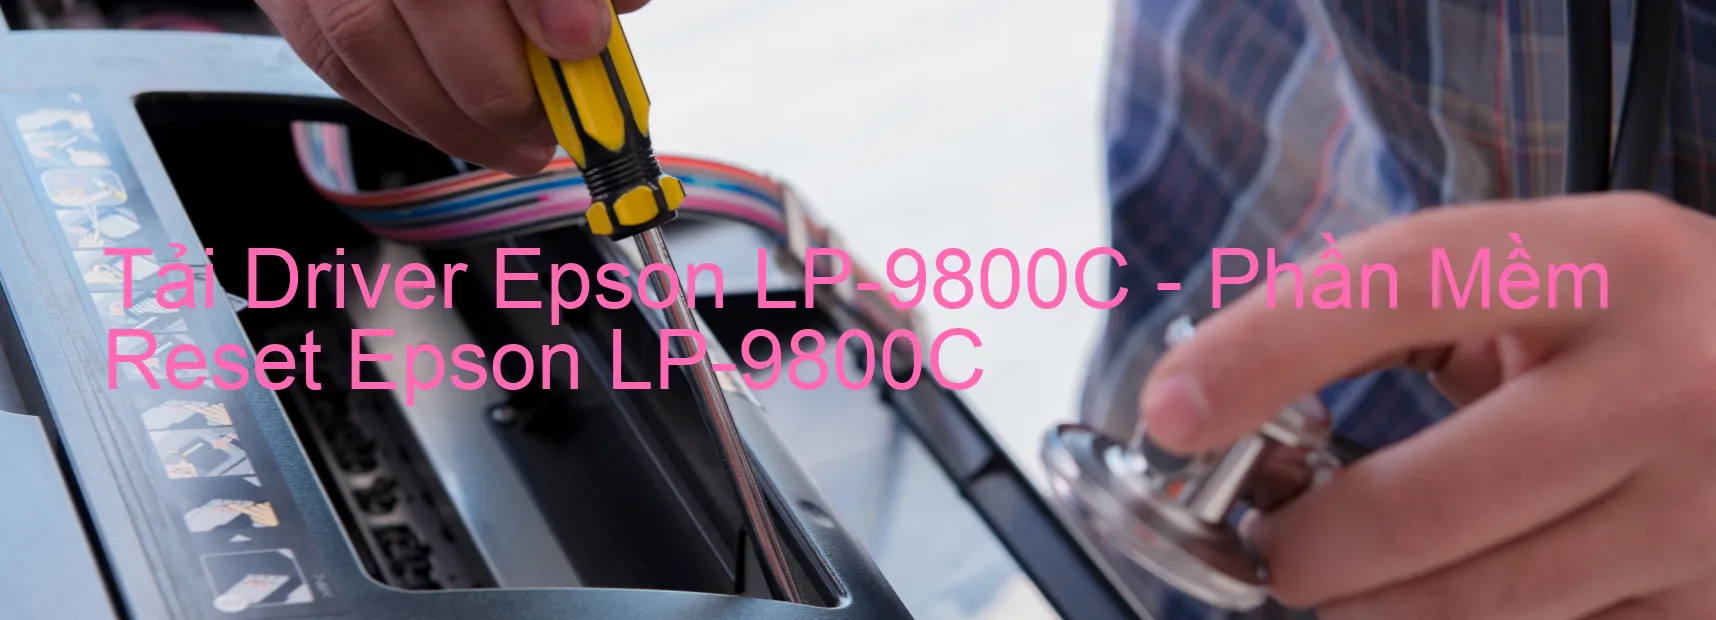 Driver Epson LP-9800C, Phần Mềm Reset Epson LP-9800C